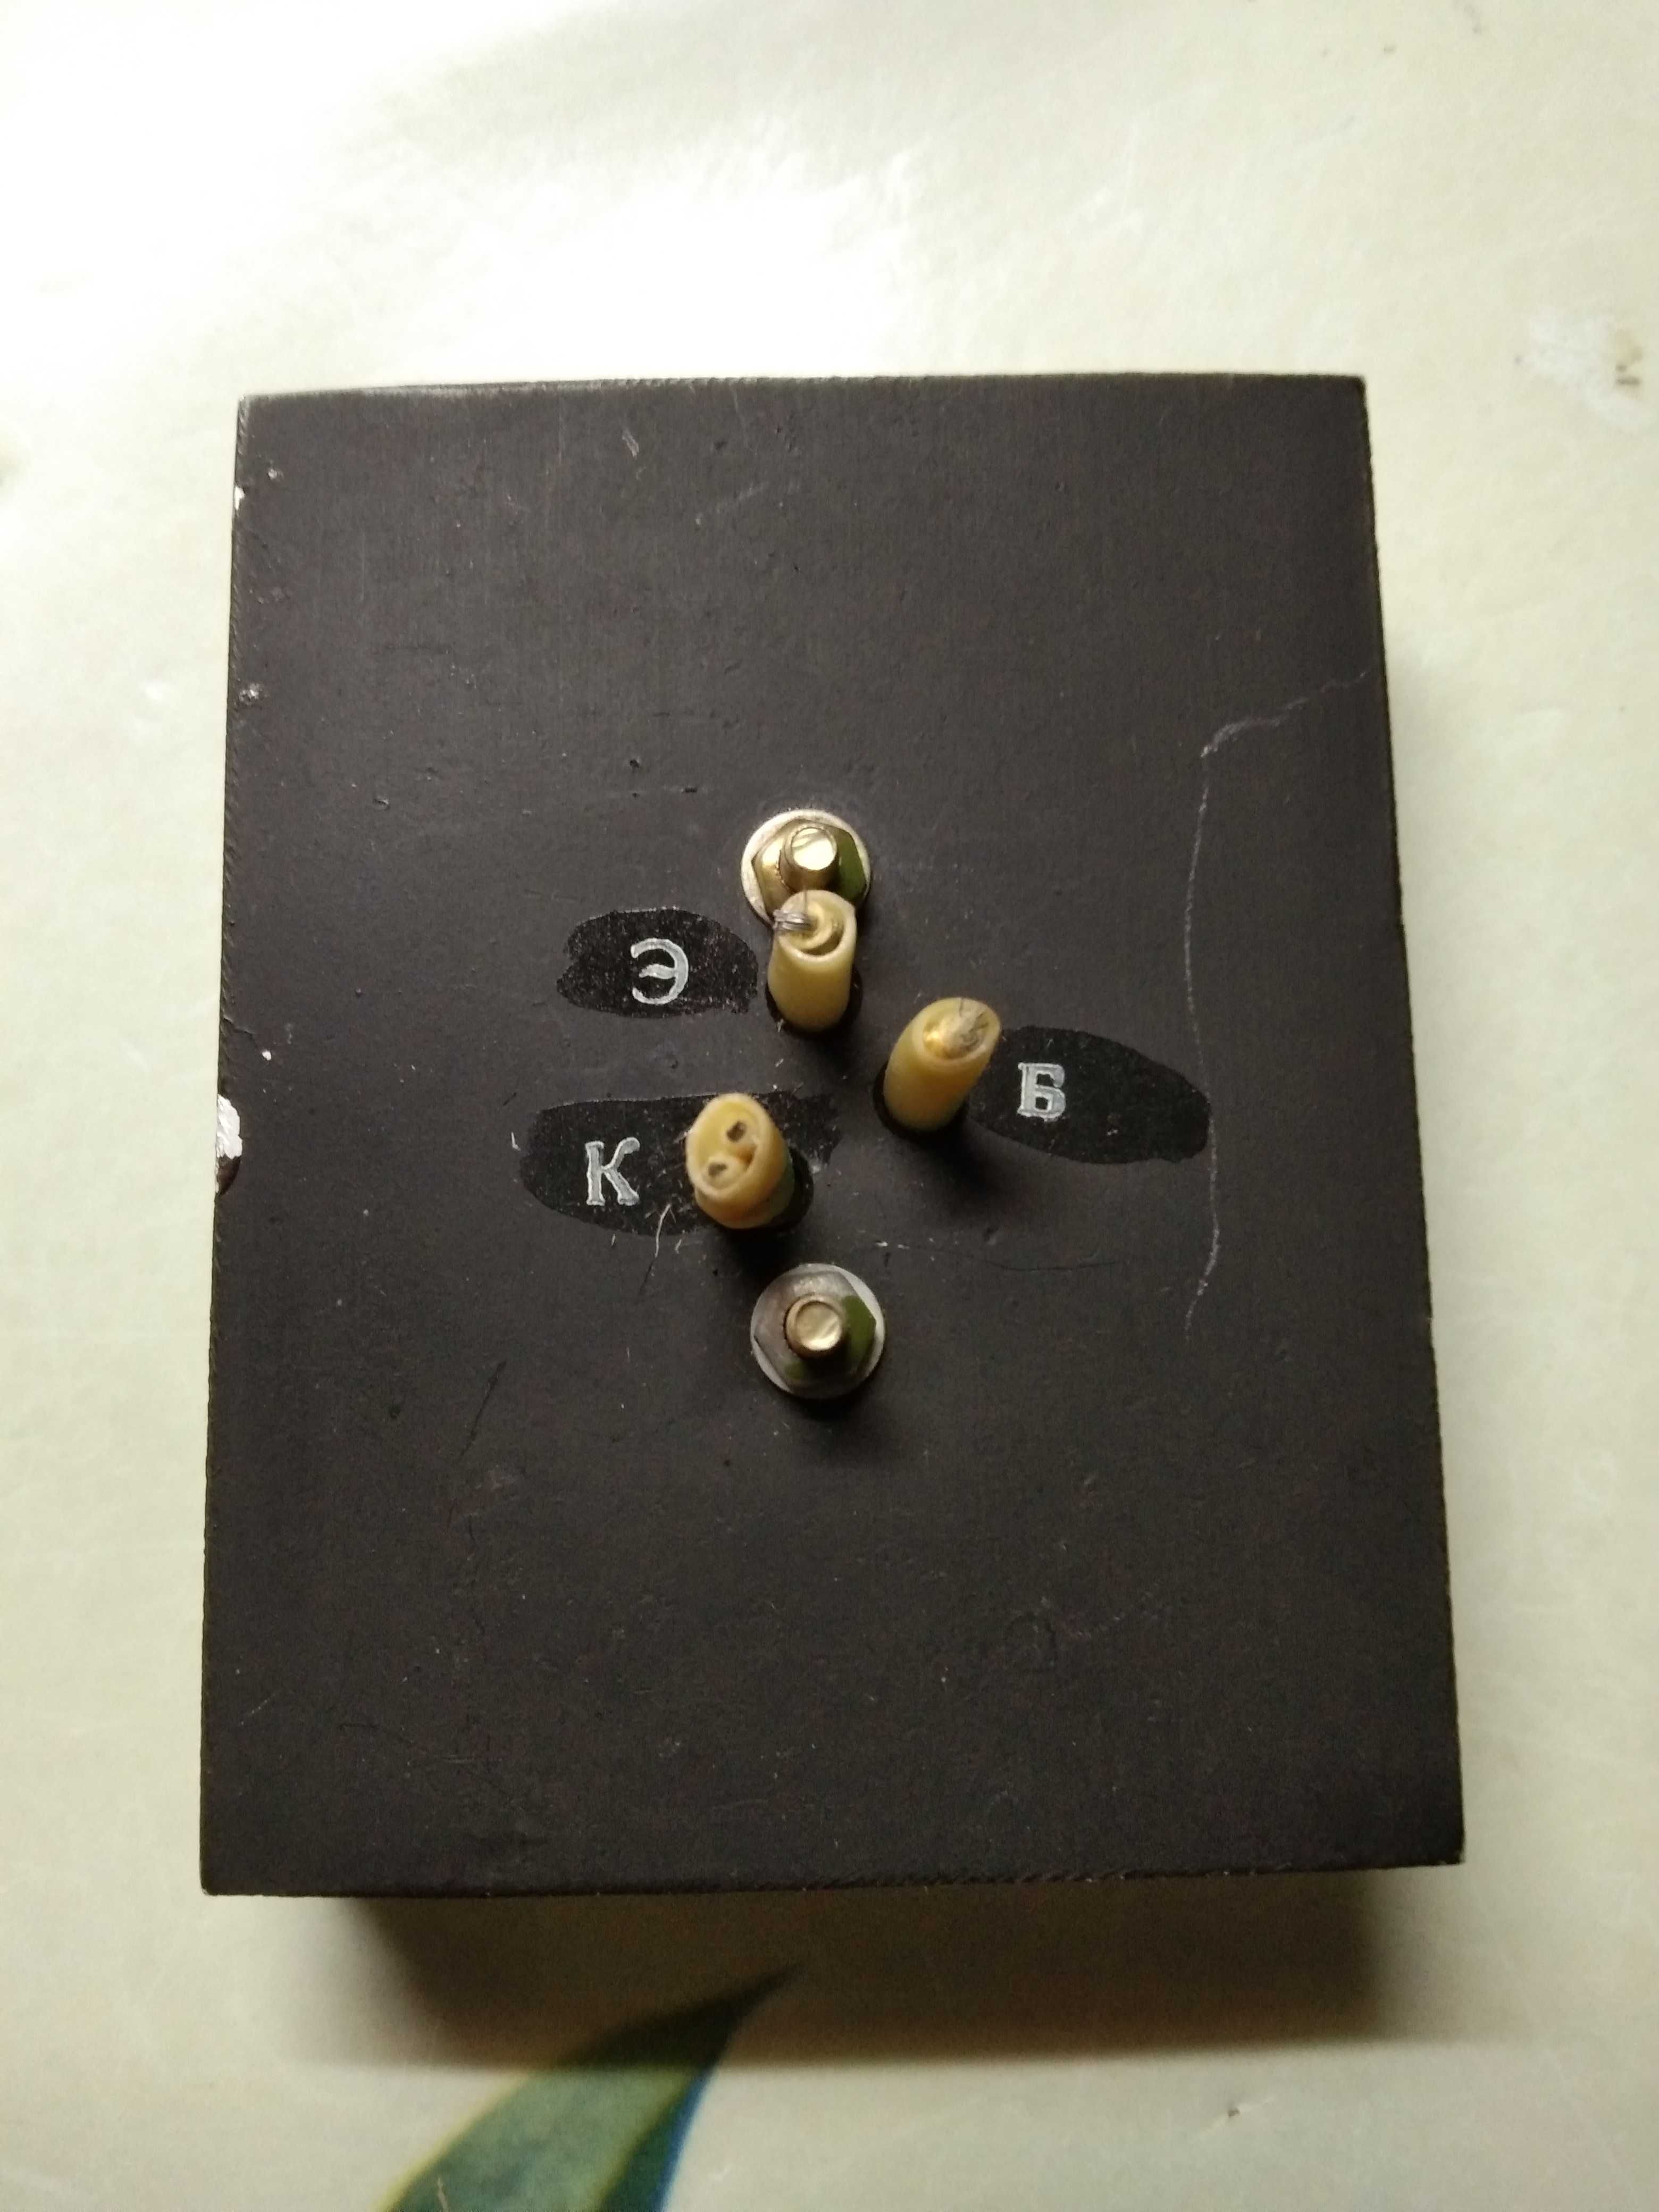 Транзистор на радиаторе П215, СССР, новый